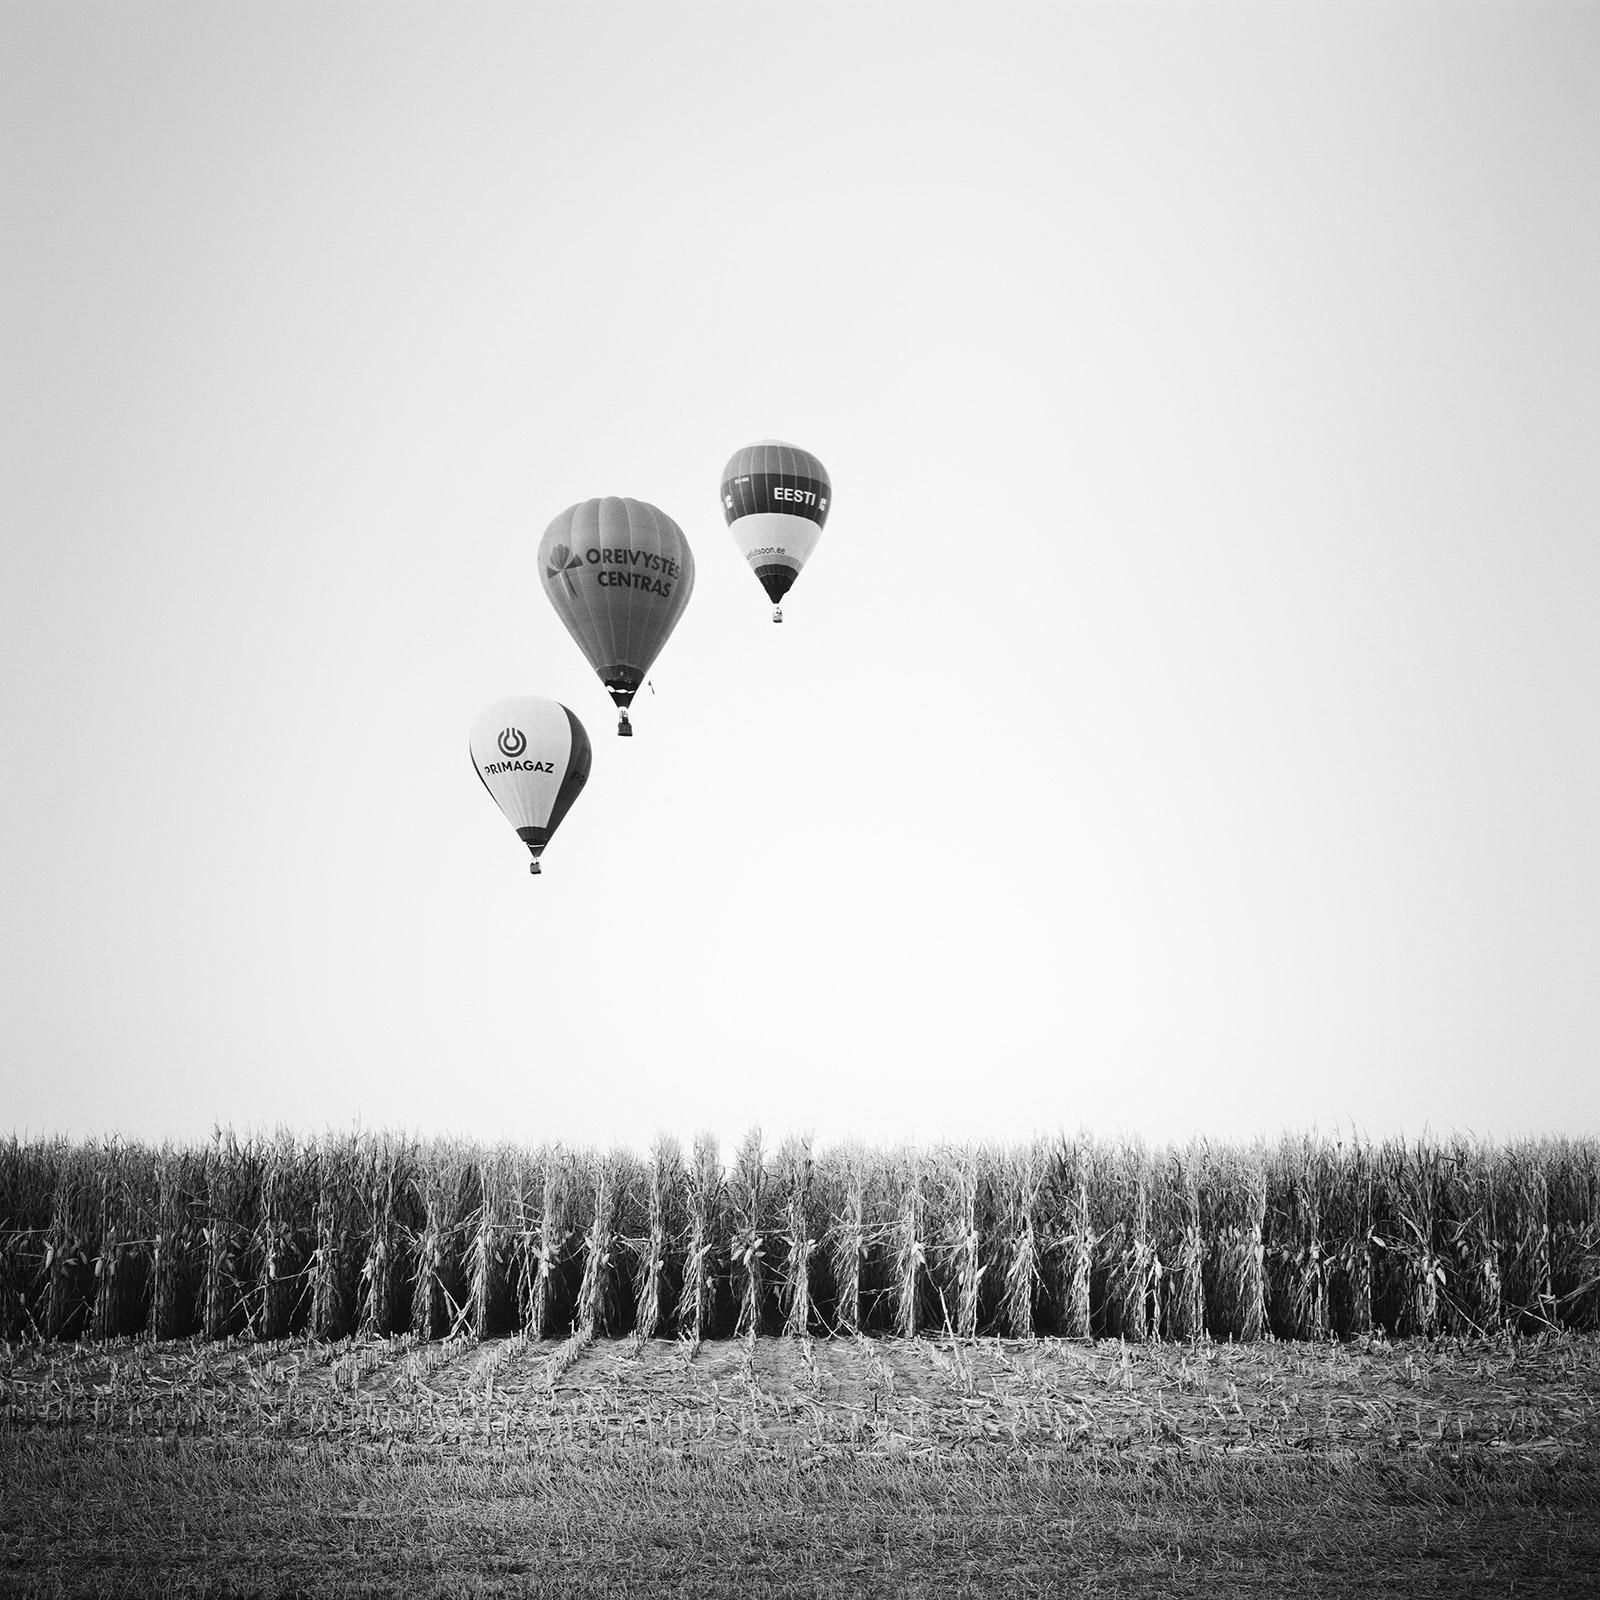 Photo du ballon d'aviation, Cornfield, championnat, Autriche, paysage noir et blanc